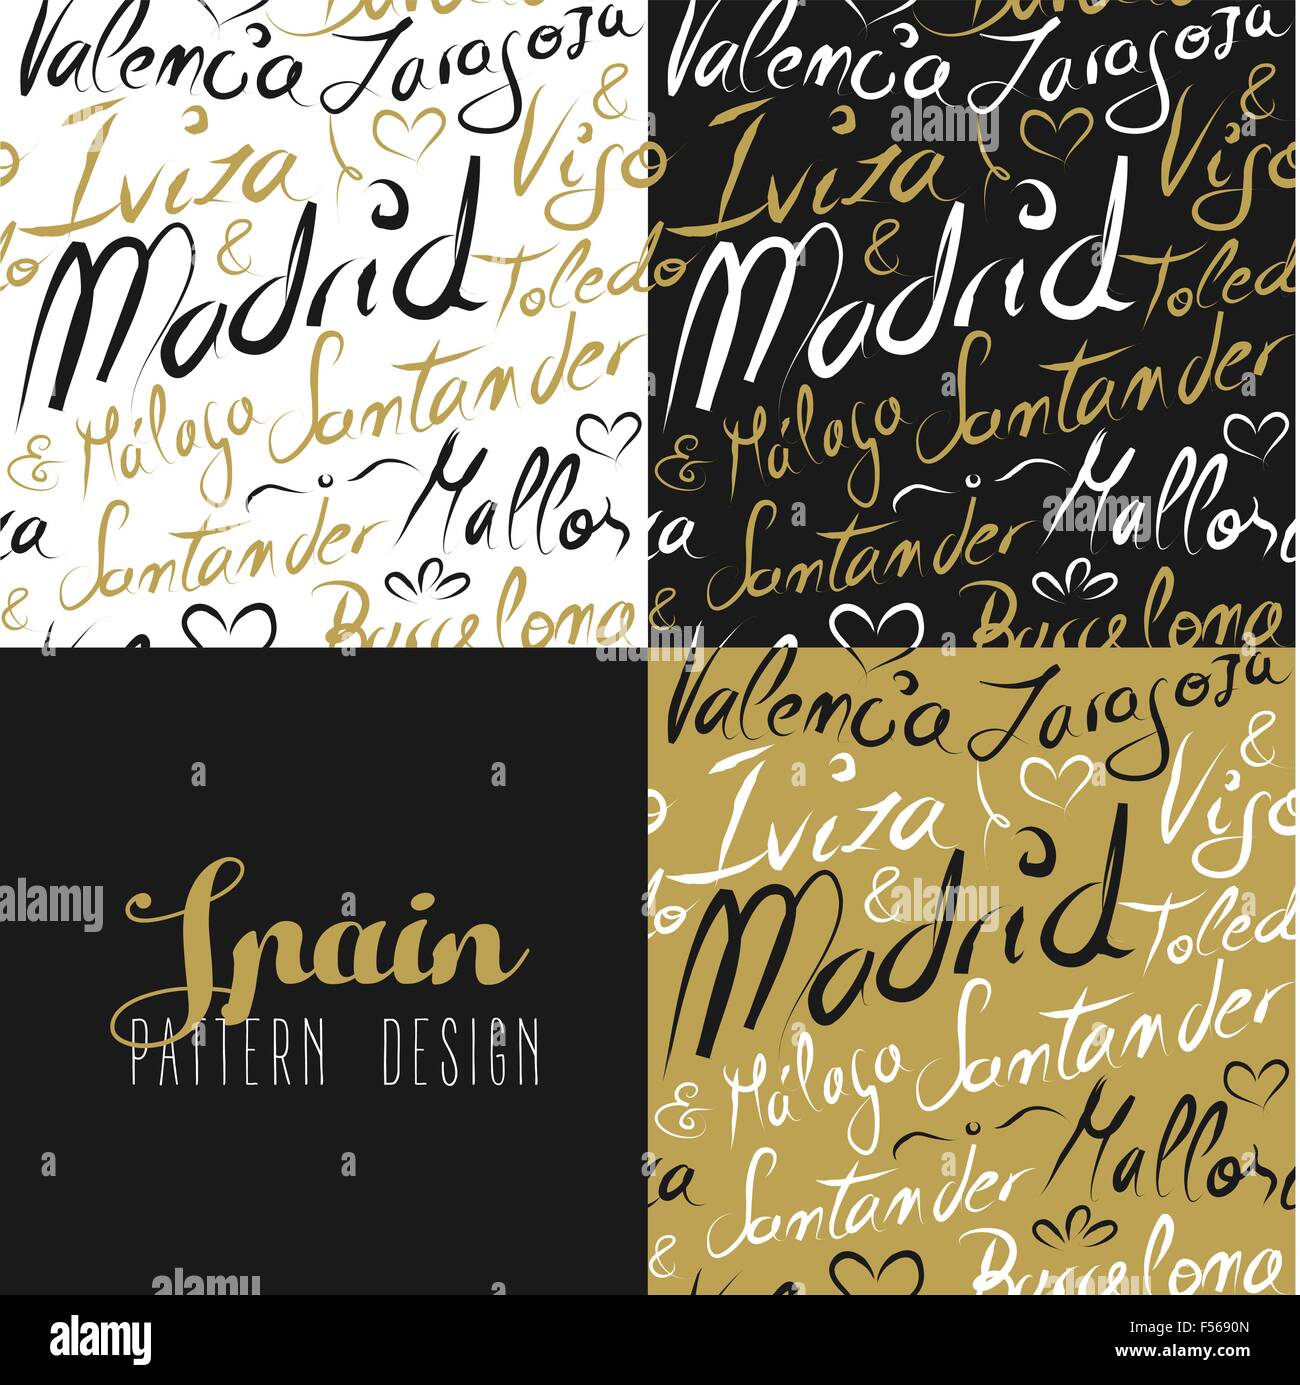 Viaggi Spagna Europa celebri città con la calligrafia fatti a mano. La città di Madrid, Barcellona, Mallorca, Toledo, Santander. Illustrazione Vettoriale